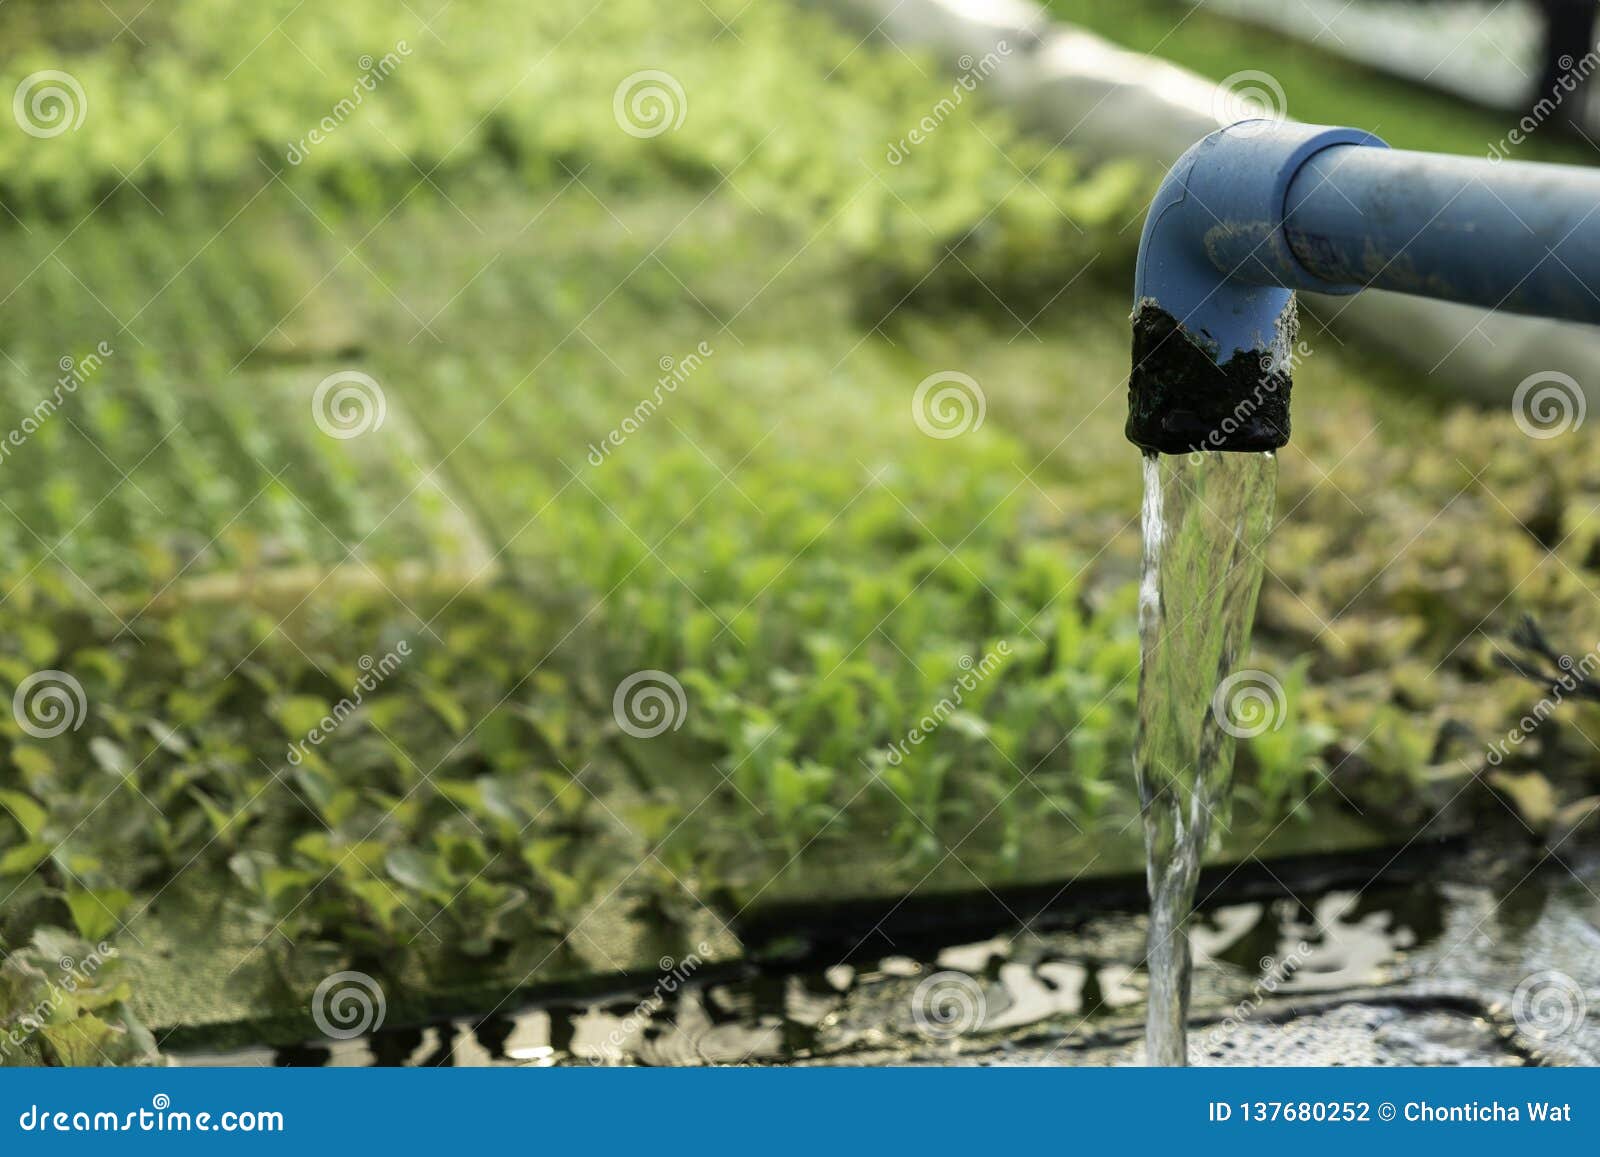 菜绿色橡木菜园的水耕的系统水和肥料自动化 Eco有机现代聪明的农厂技术库存照片 图片包括有菜绿色橡木菜园的水耕的系统水和肥料自动化 Eco有机现代聪明的农厂技术